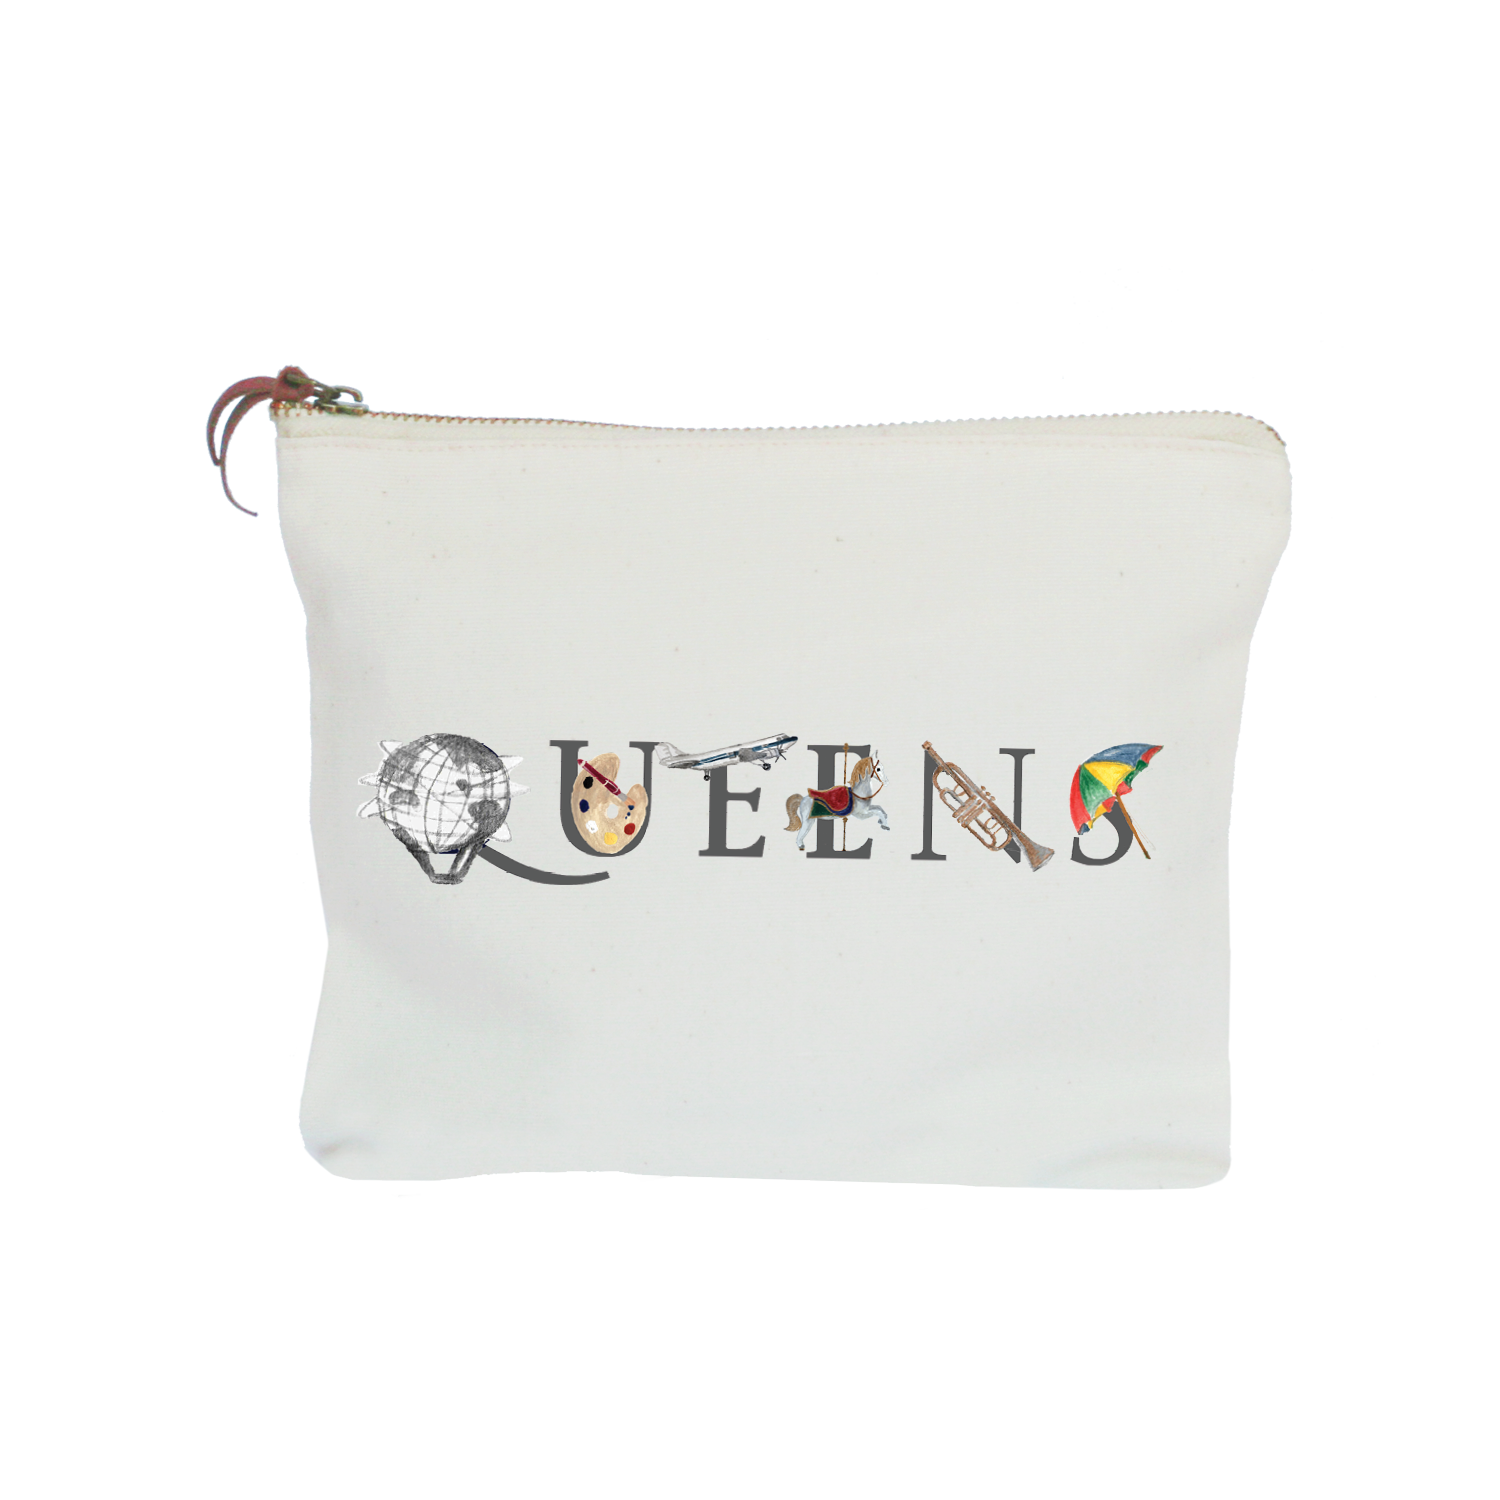 queens zipper pouch